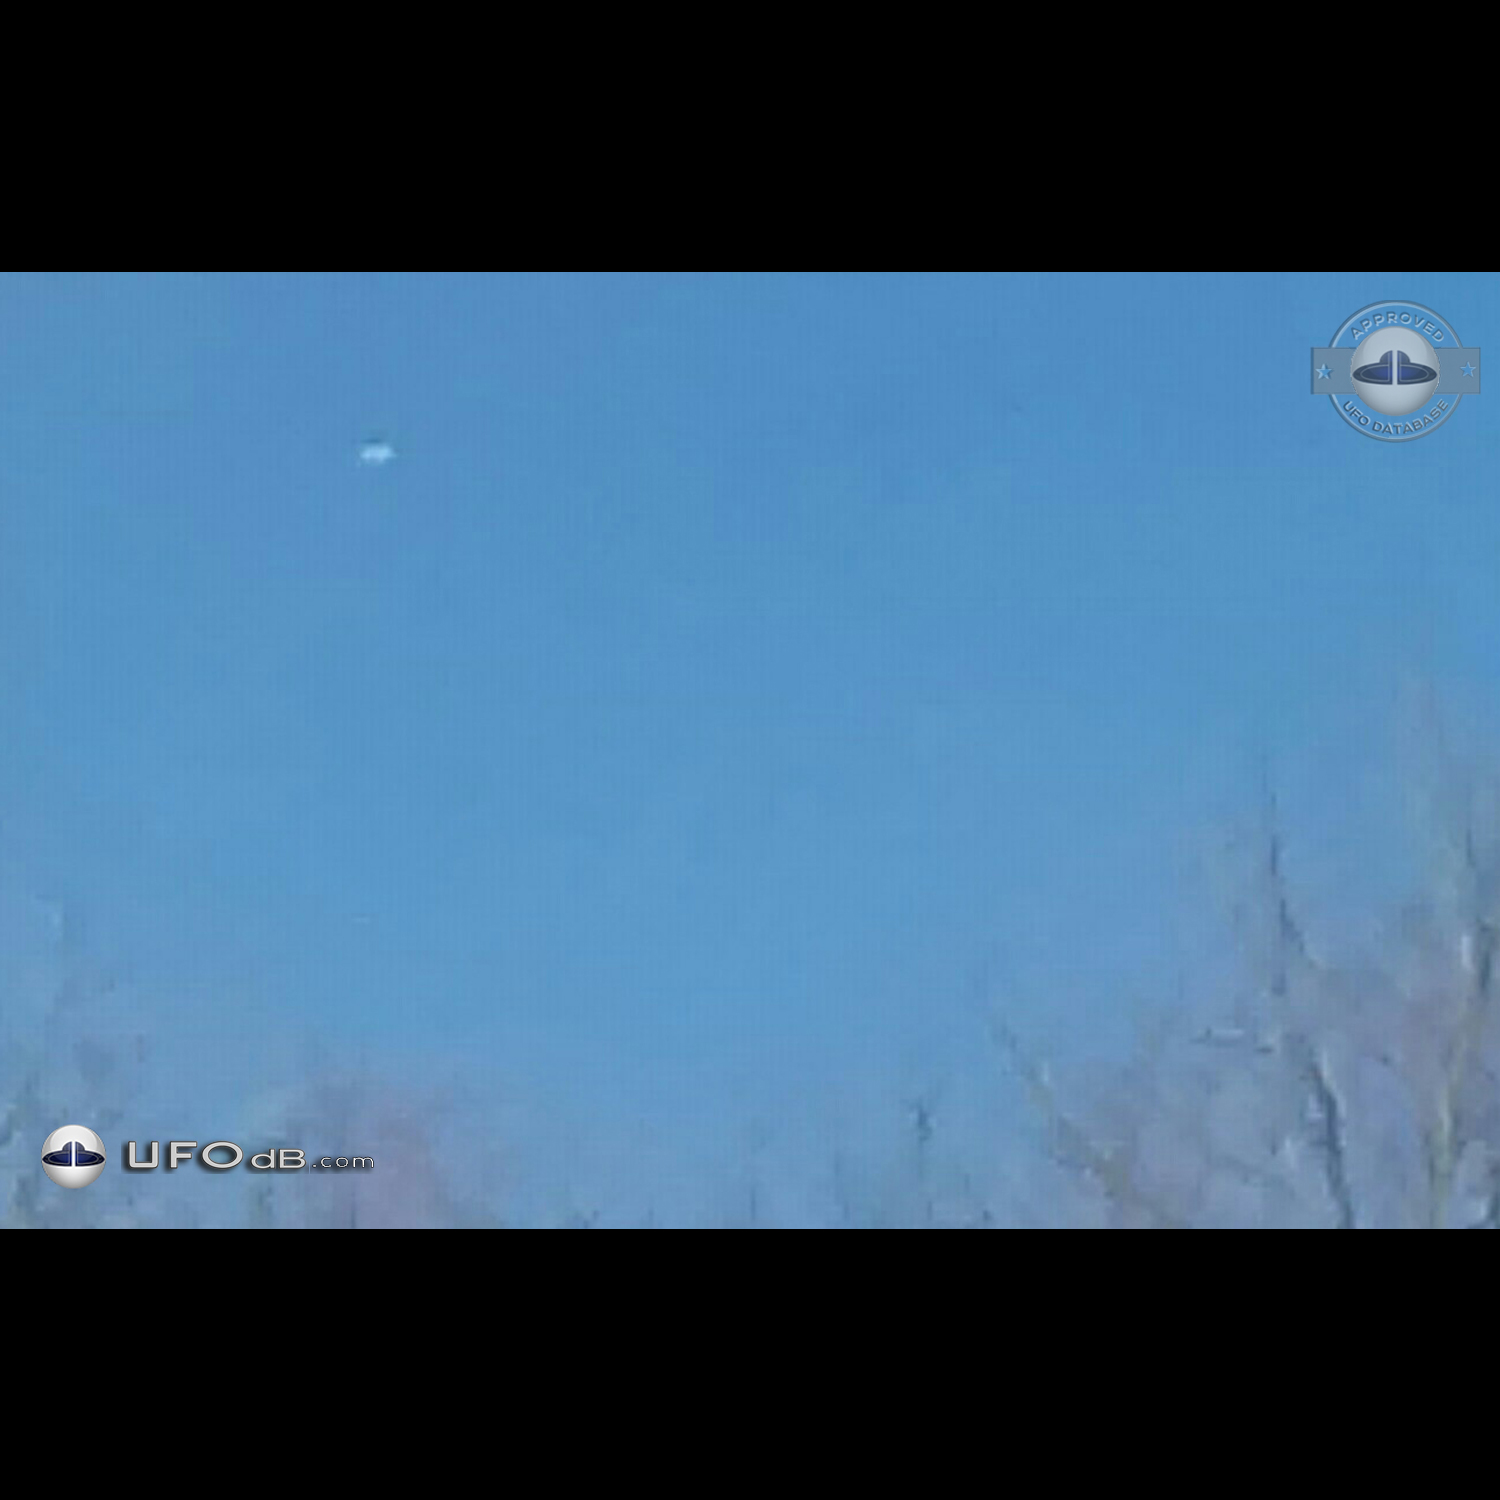 Silent silver Disk UFO gliding in the sky Dalton Pennsylvania USA 2015 UFO Picture #669-1